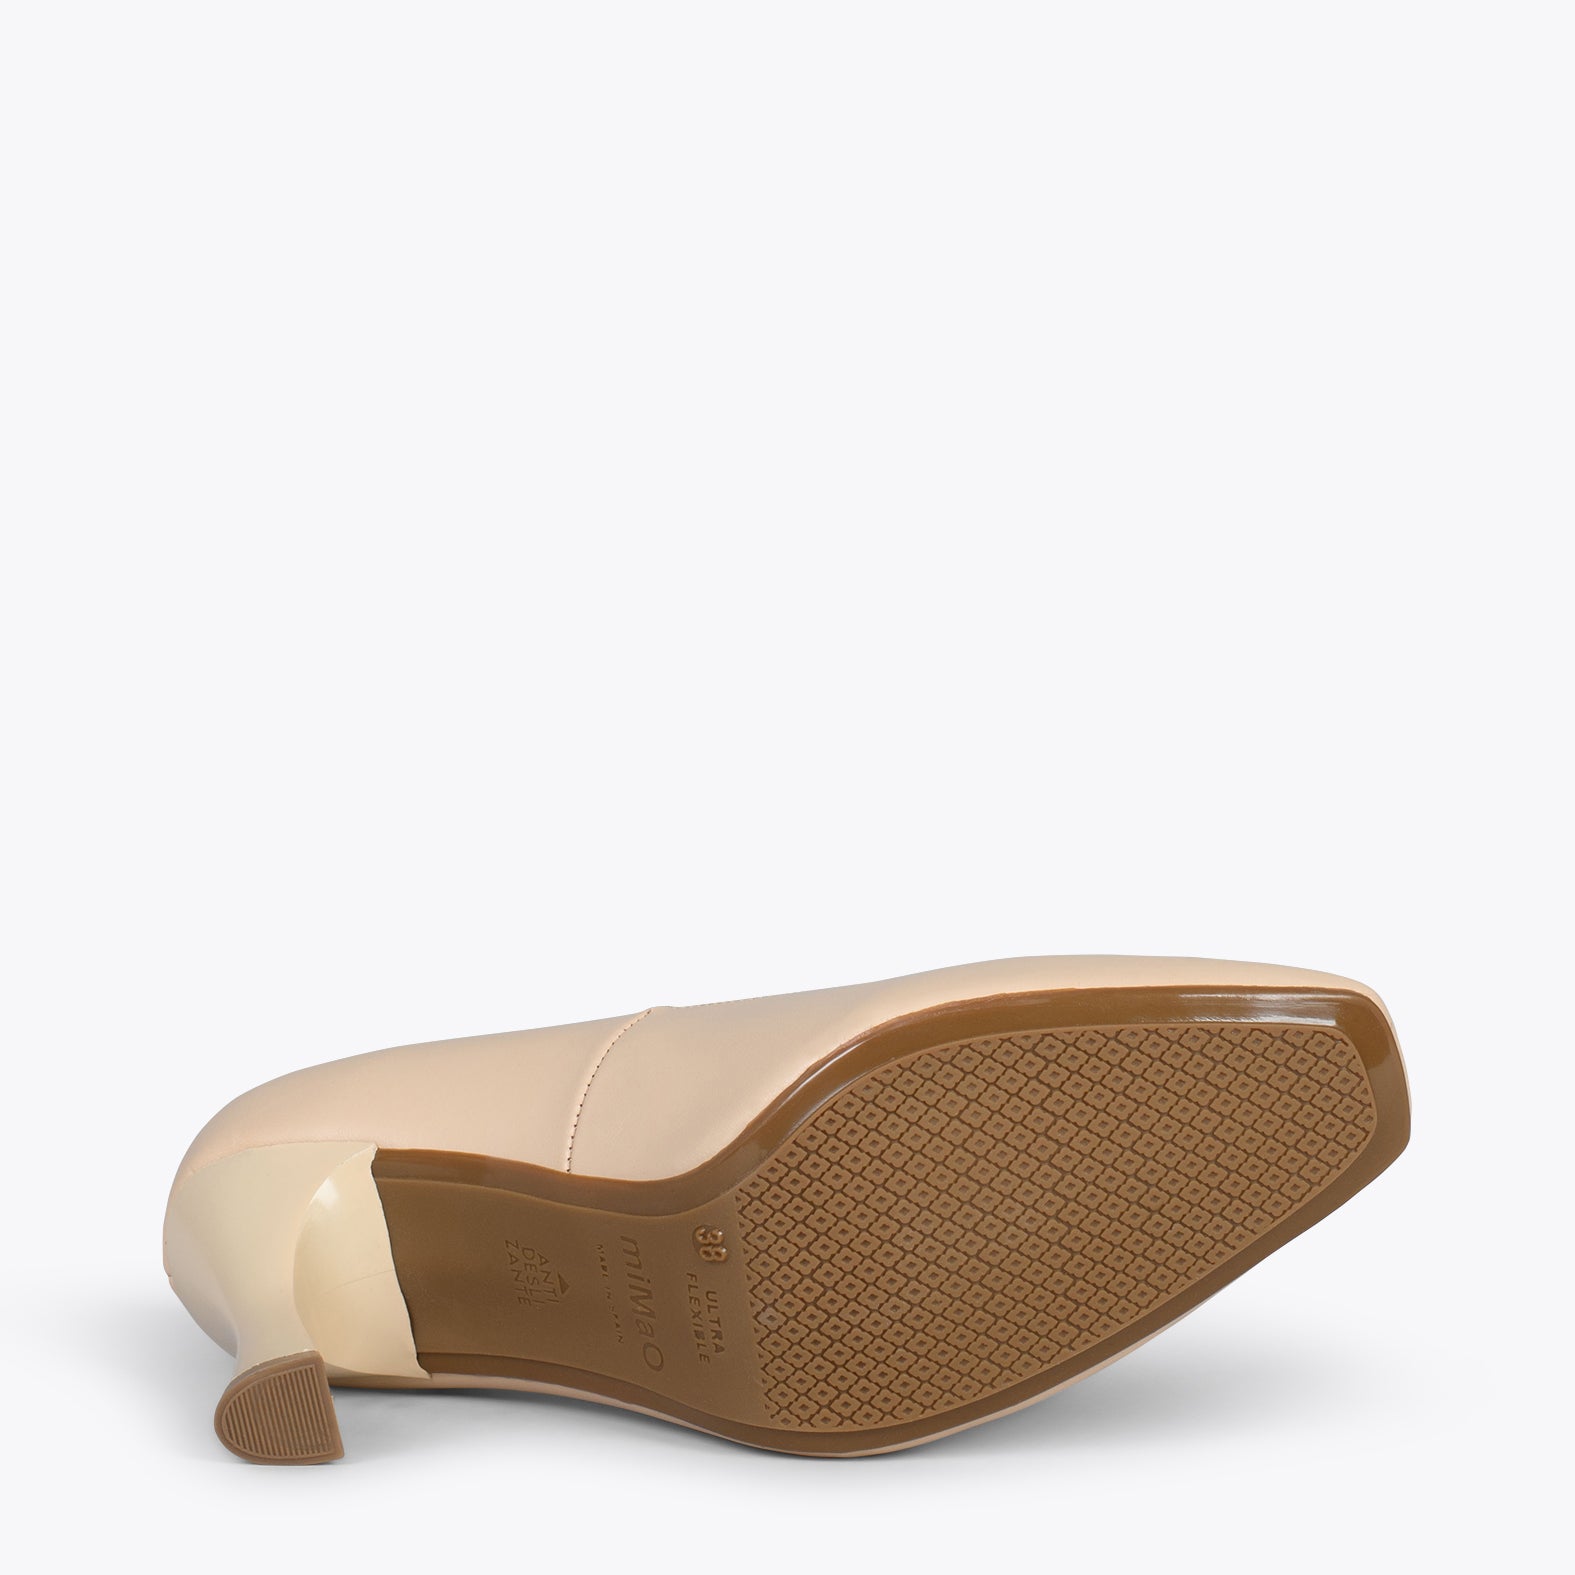 URBAN GLAM CUADRADO – Zapatos de tacón de campana BEIGE